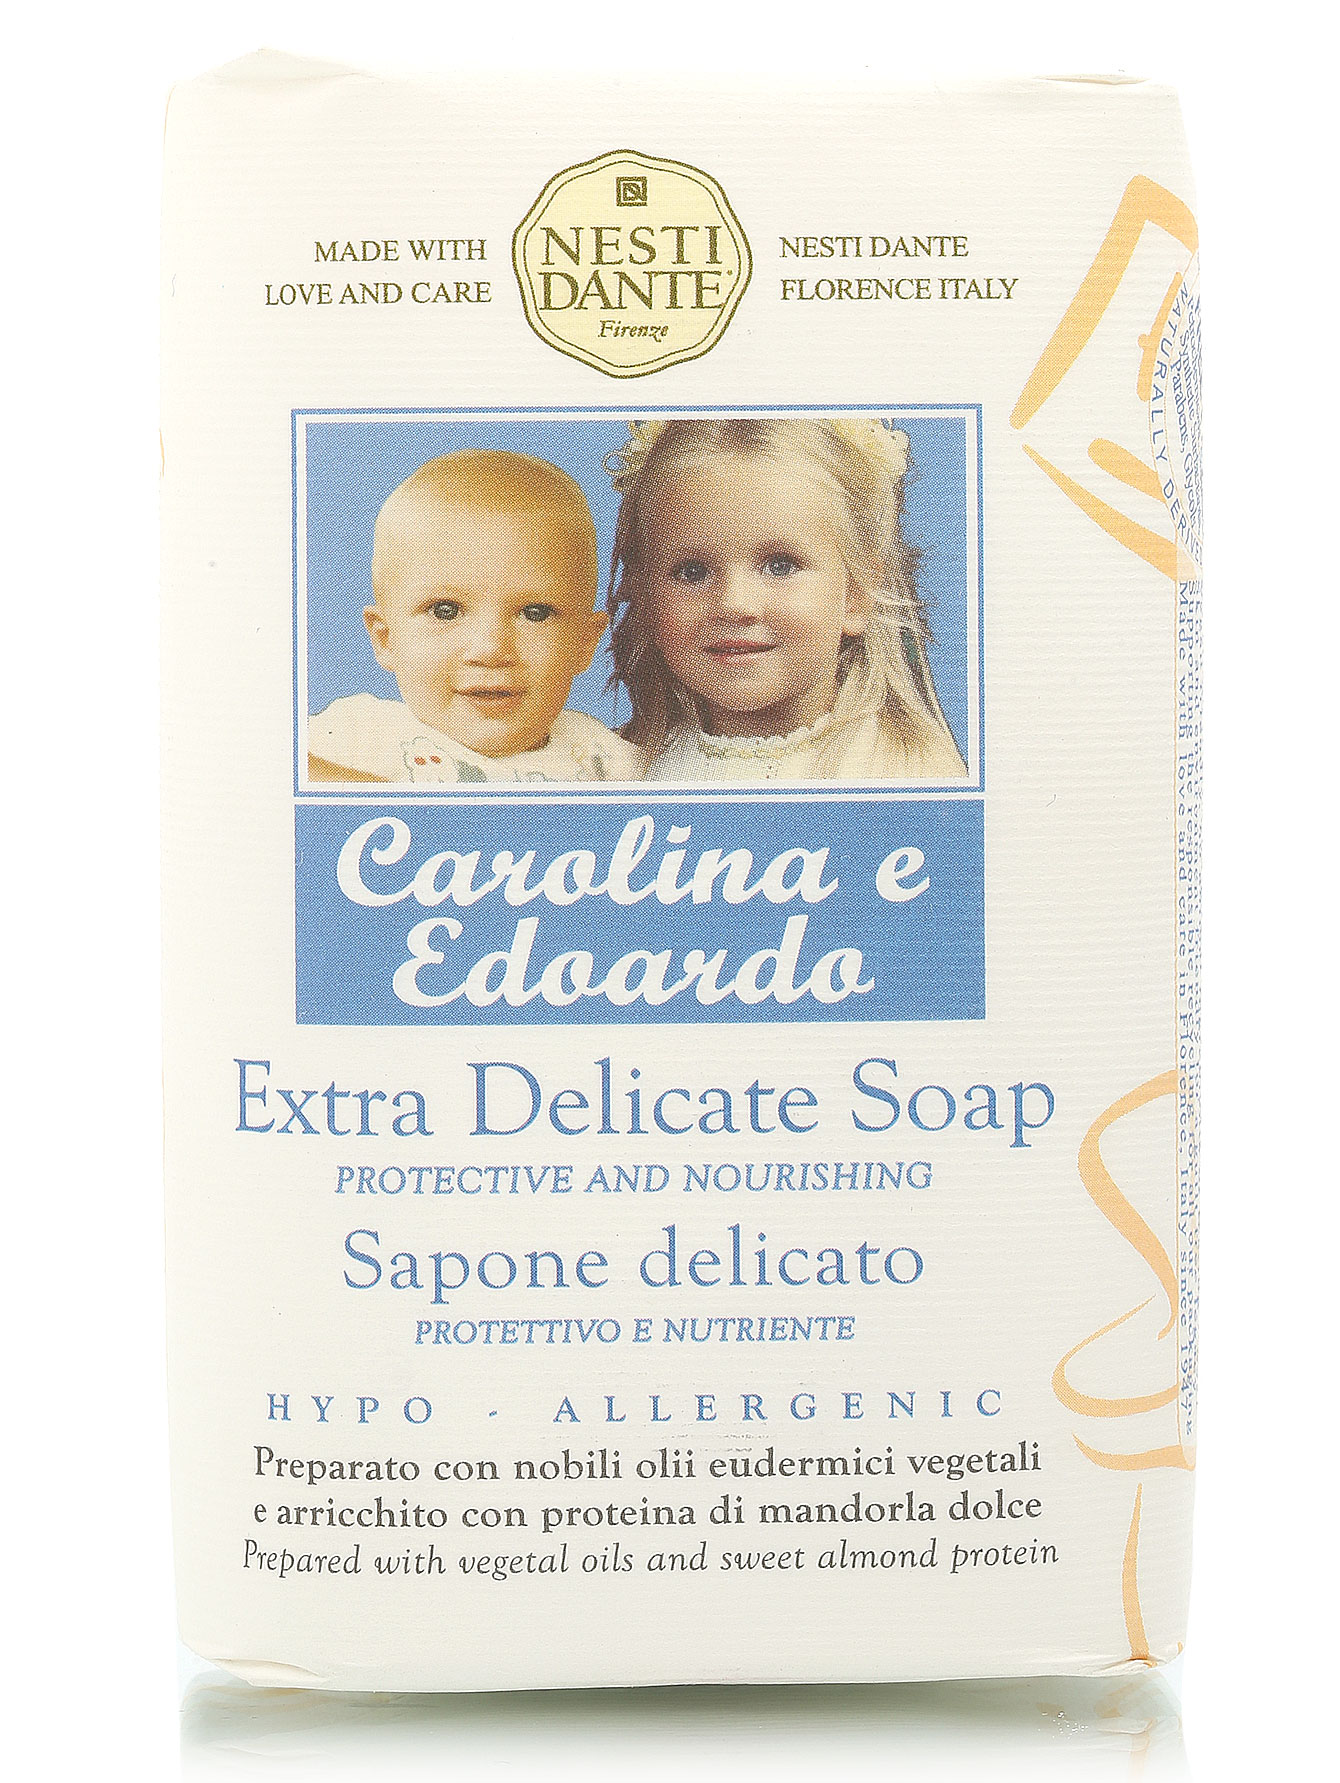 Мыло деликатное Carolina & Edoardo, 250 г - Общий вид